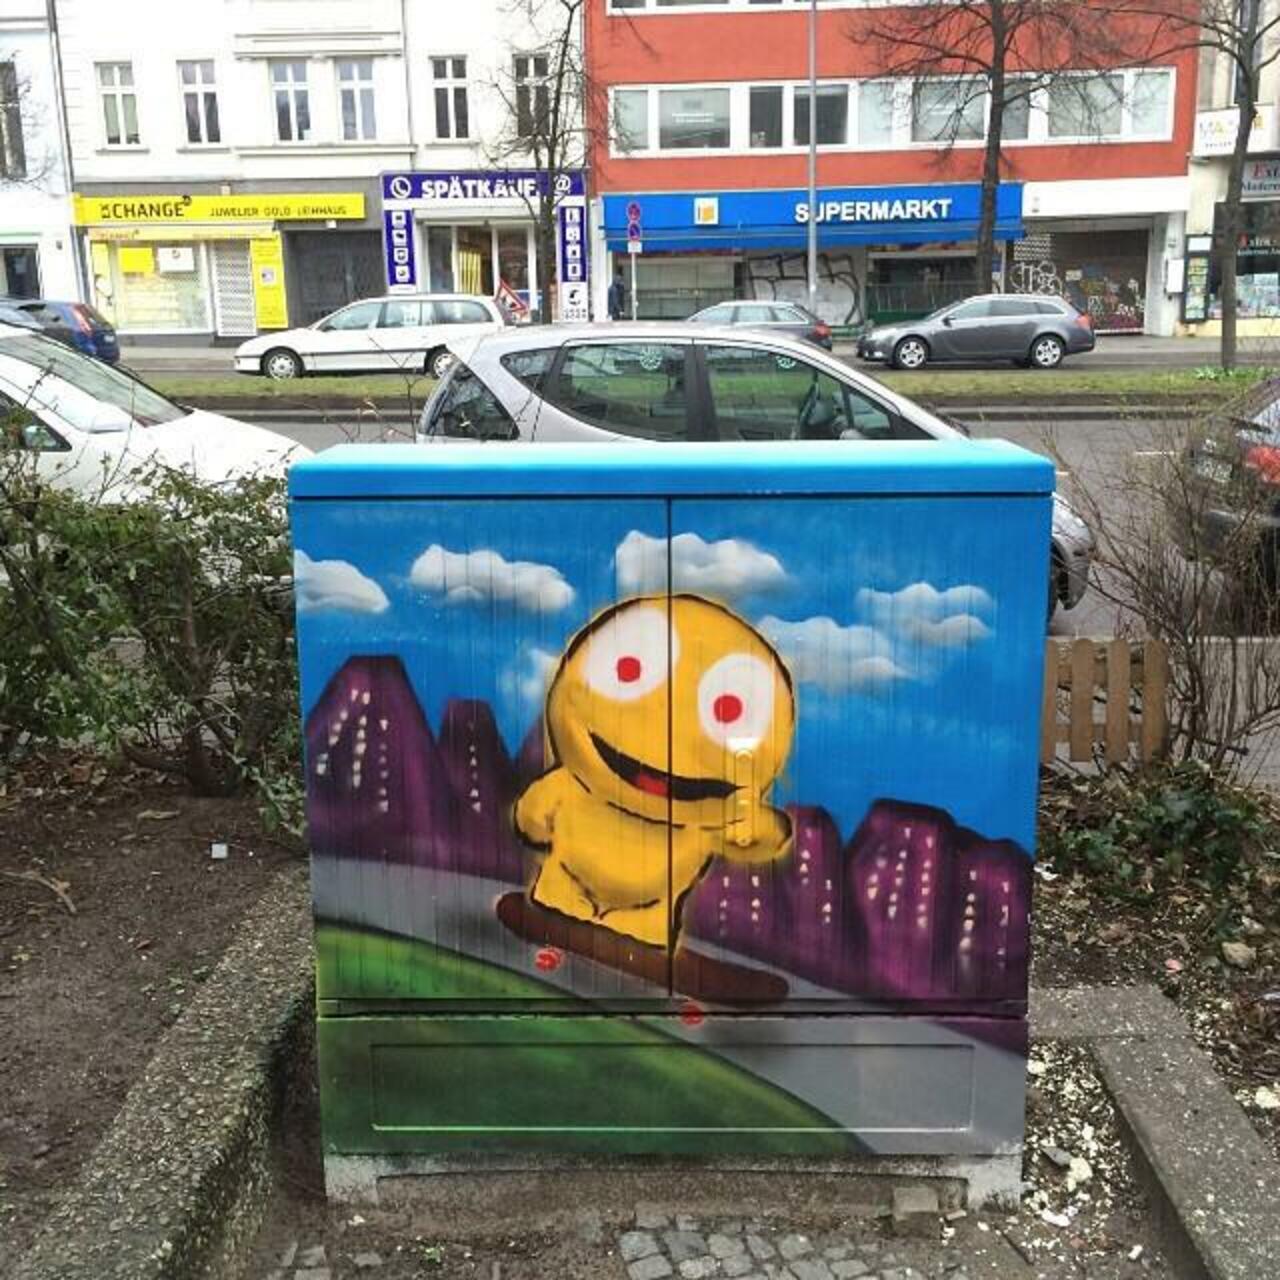 #Berlin #Allemagne #streetart #street #art #urbanart #urbantag #graffiti #streetartberlin by becombegeek http://t.co/2axyhYOYCI